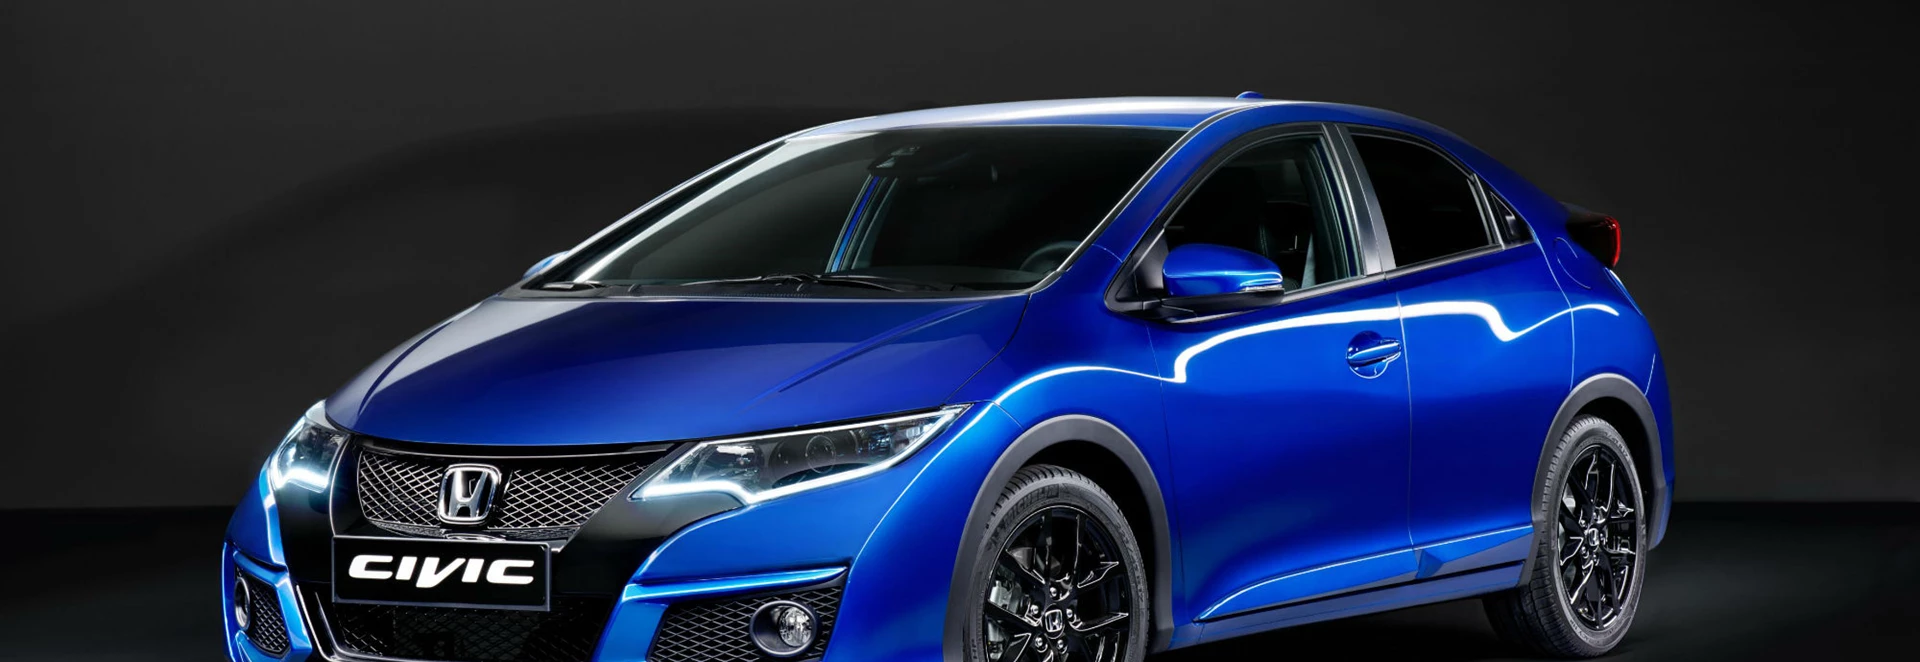 Honda Civic Sport 1.4 i-VTEC hatchback review 